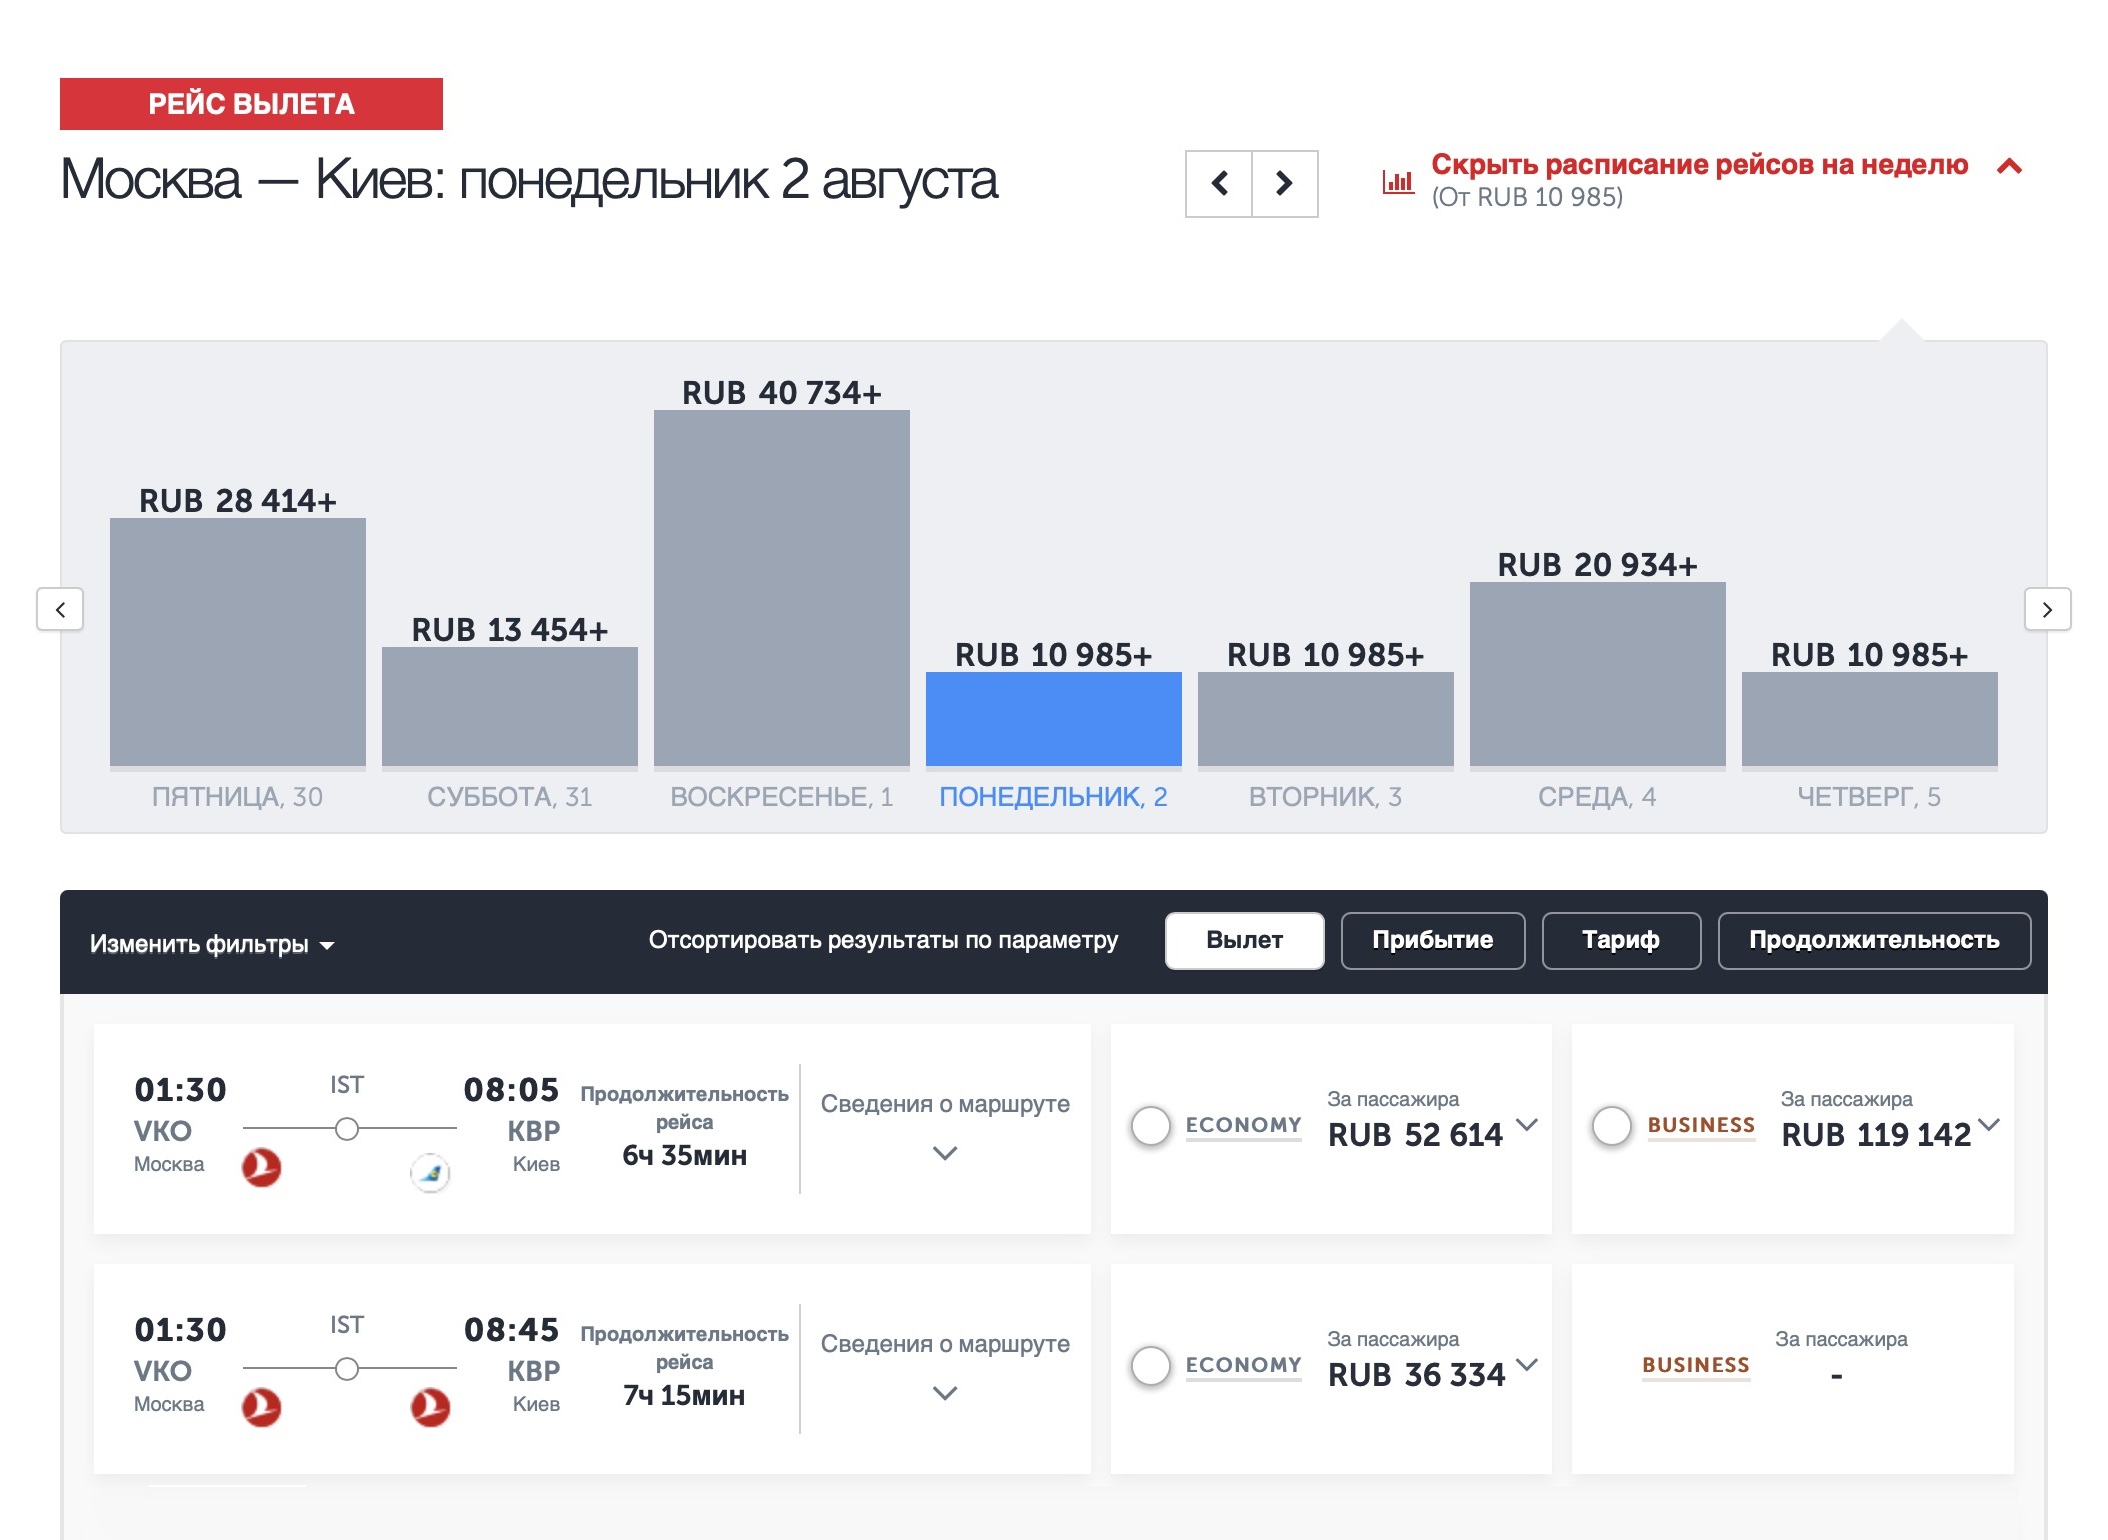 Авиабилеты Turkish Airlines из Москвы в Киев через Турцию. Цены в период с 30 июля по 5 августа начинаются от 10 985 ₽